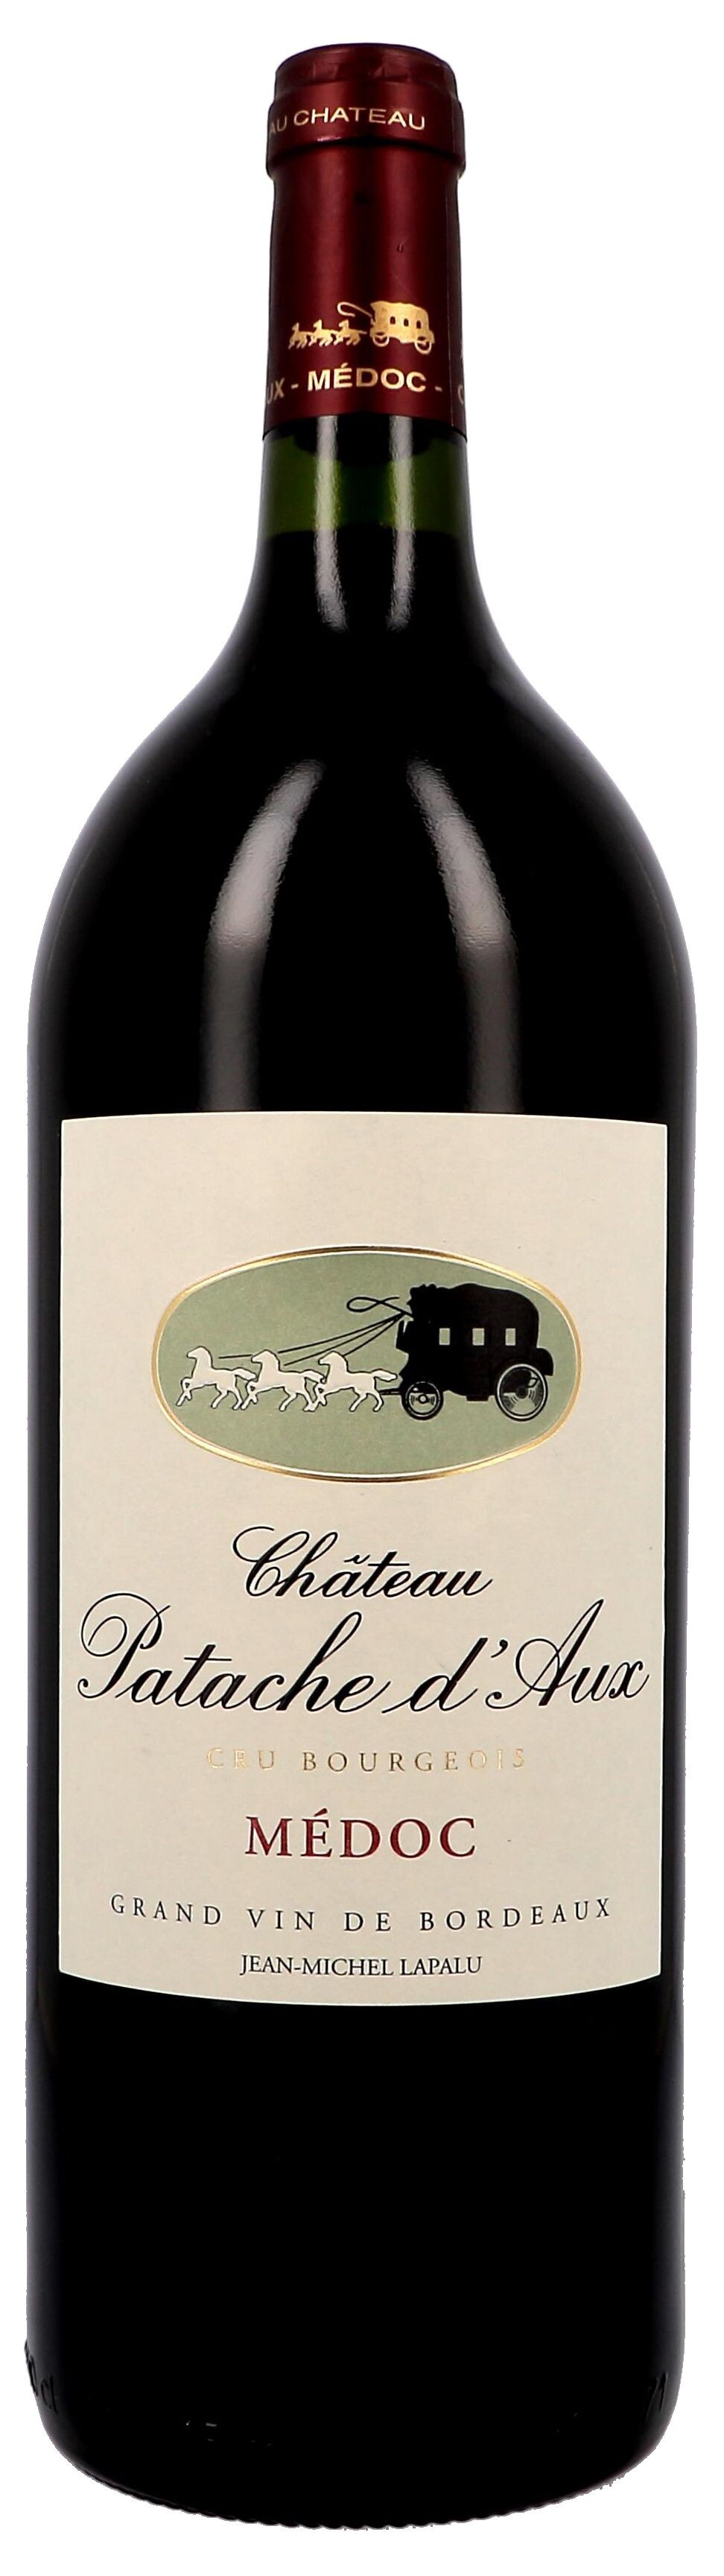 Chateau Patache d'Aux 1.5L 2010 Medoc Wine Cru Bourgeois Superieur